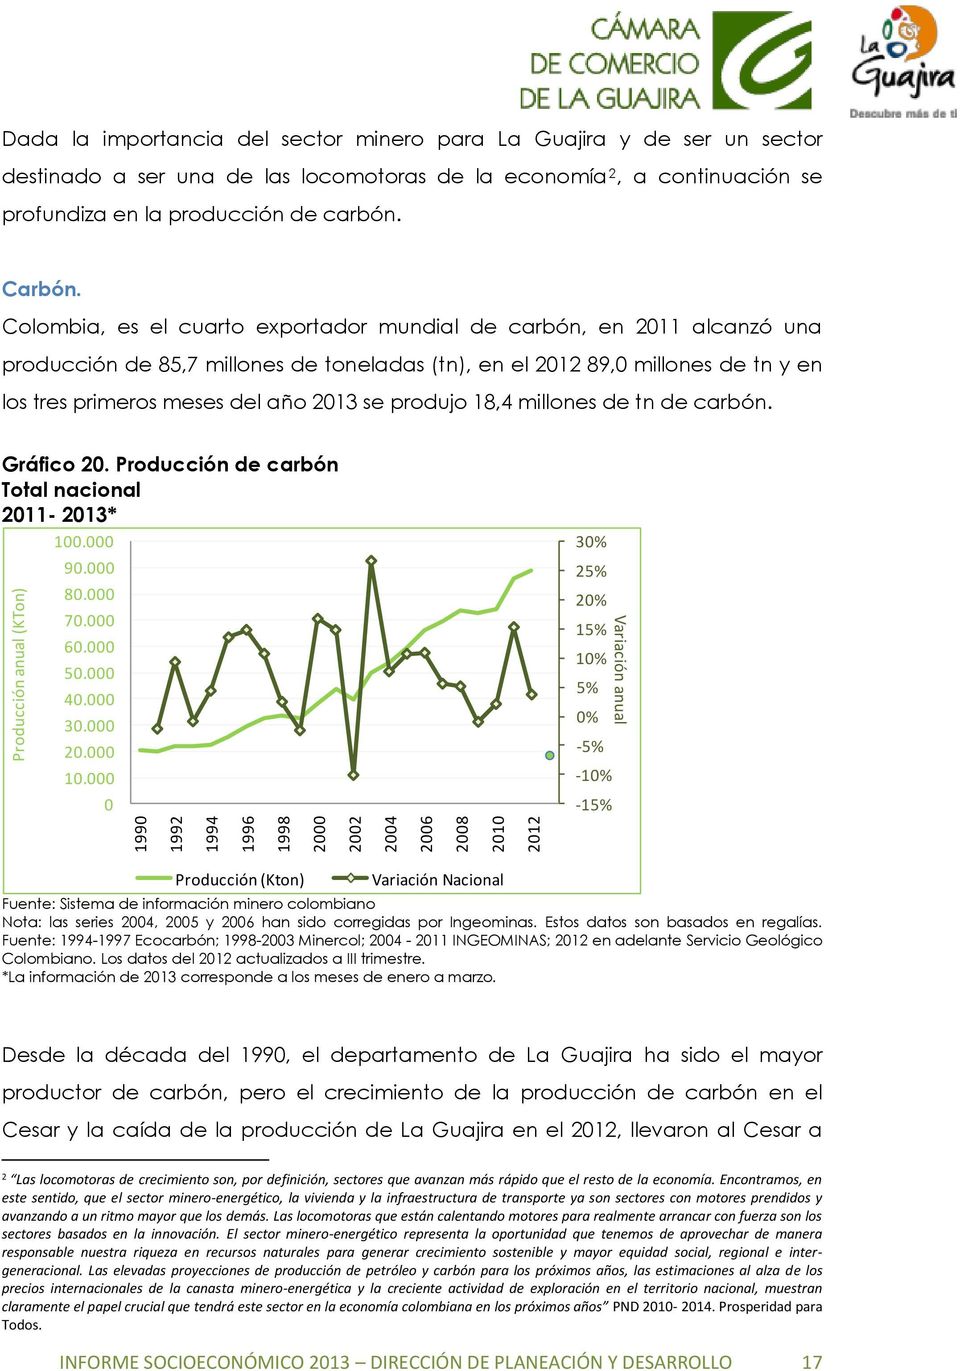 Colombia, es el cuarto exportador mundial de carbón, en 2011 alcanzó una producción de 85,7 millones de toneladas (tn), en el 2012 89,0 millones de tn y en los tres primeros meses del año 2013 se